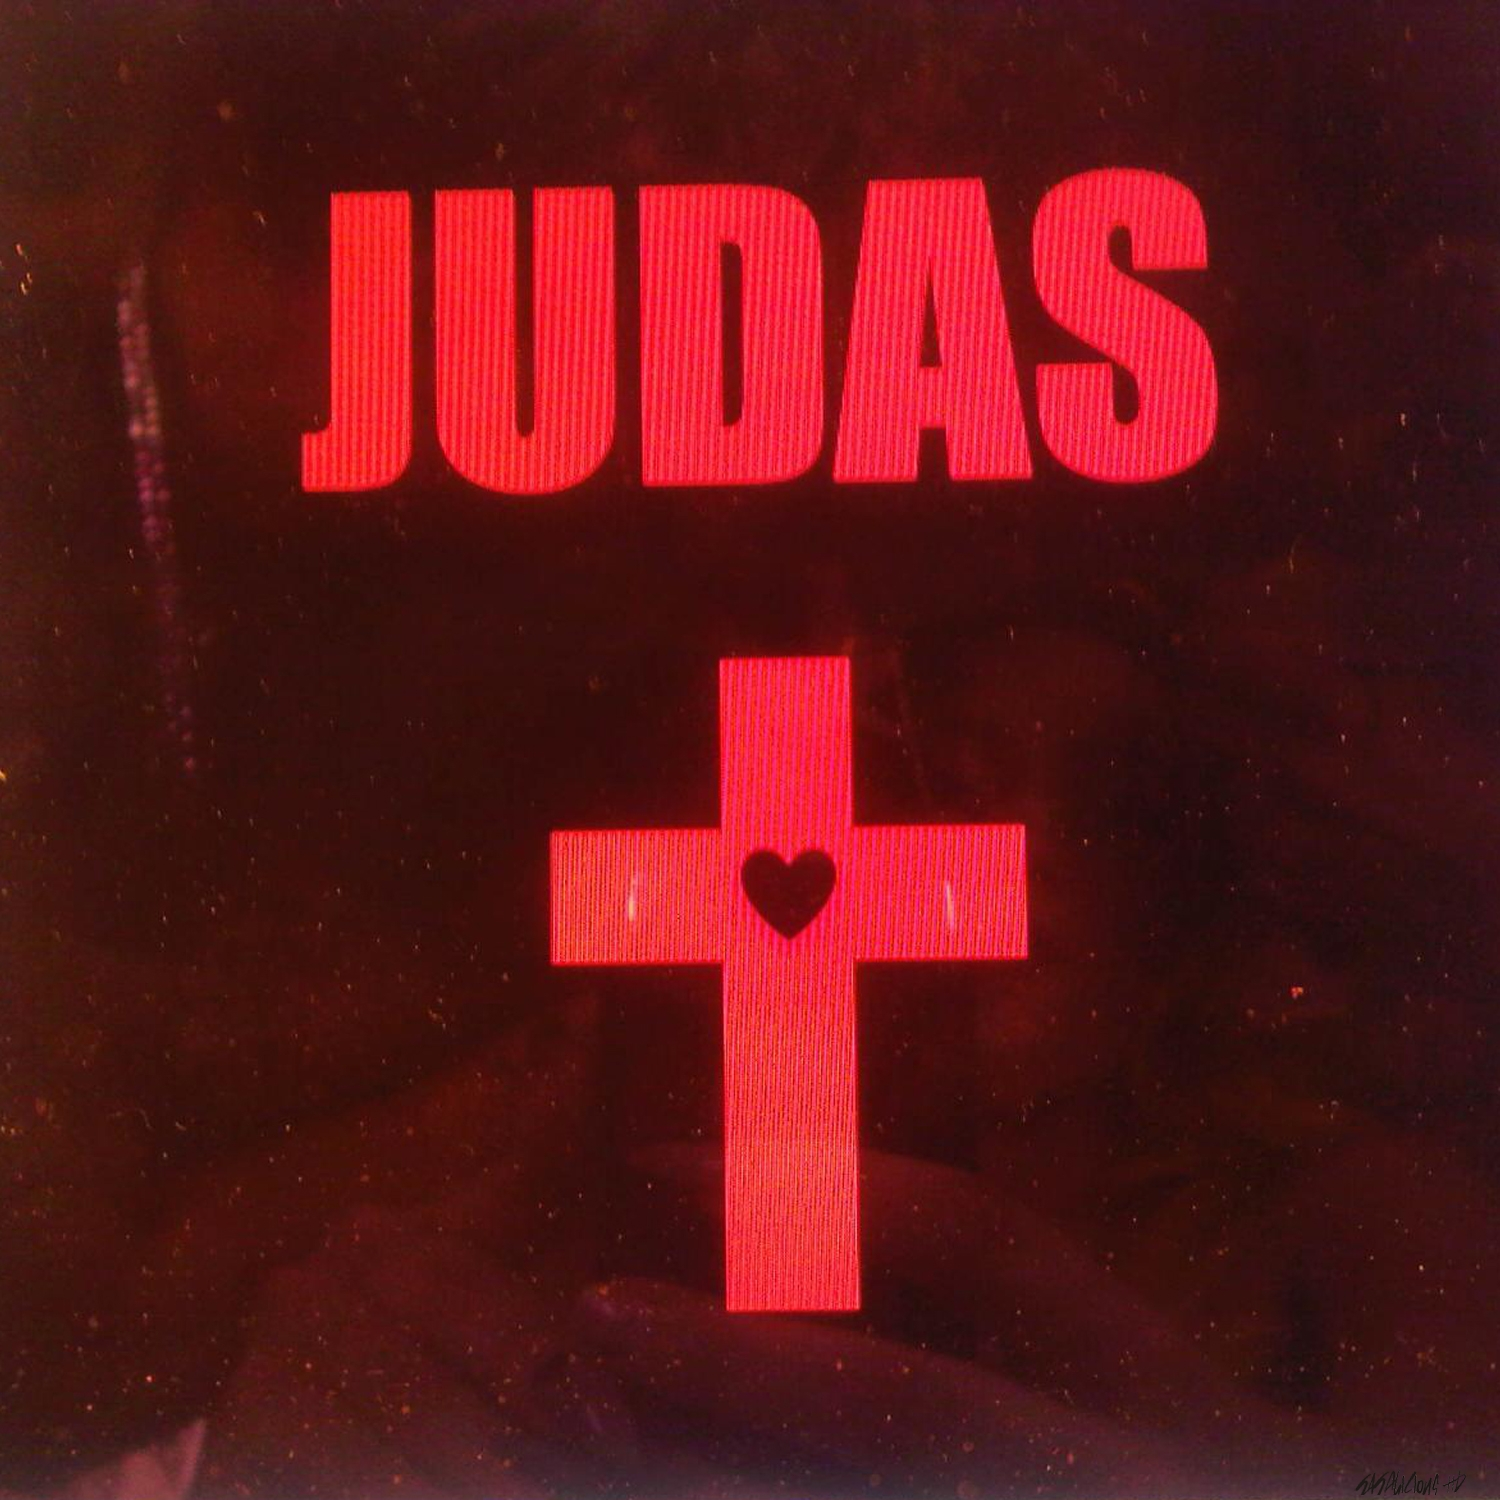 20120523122315!Judas-Single.png